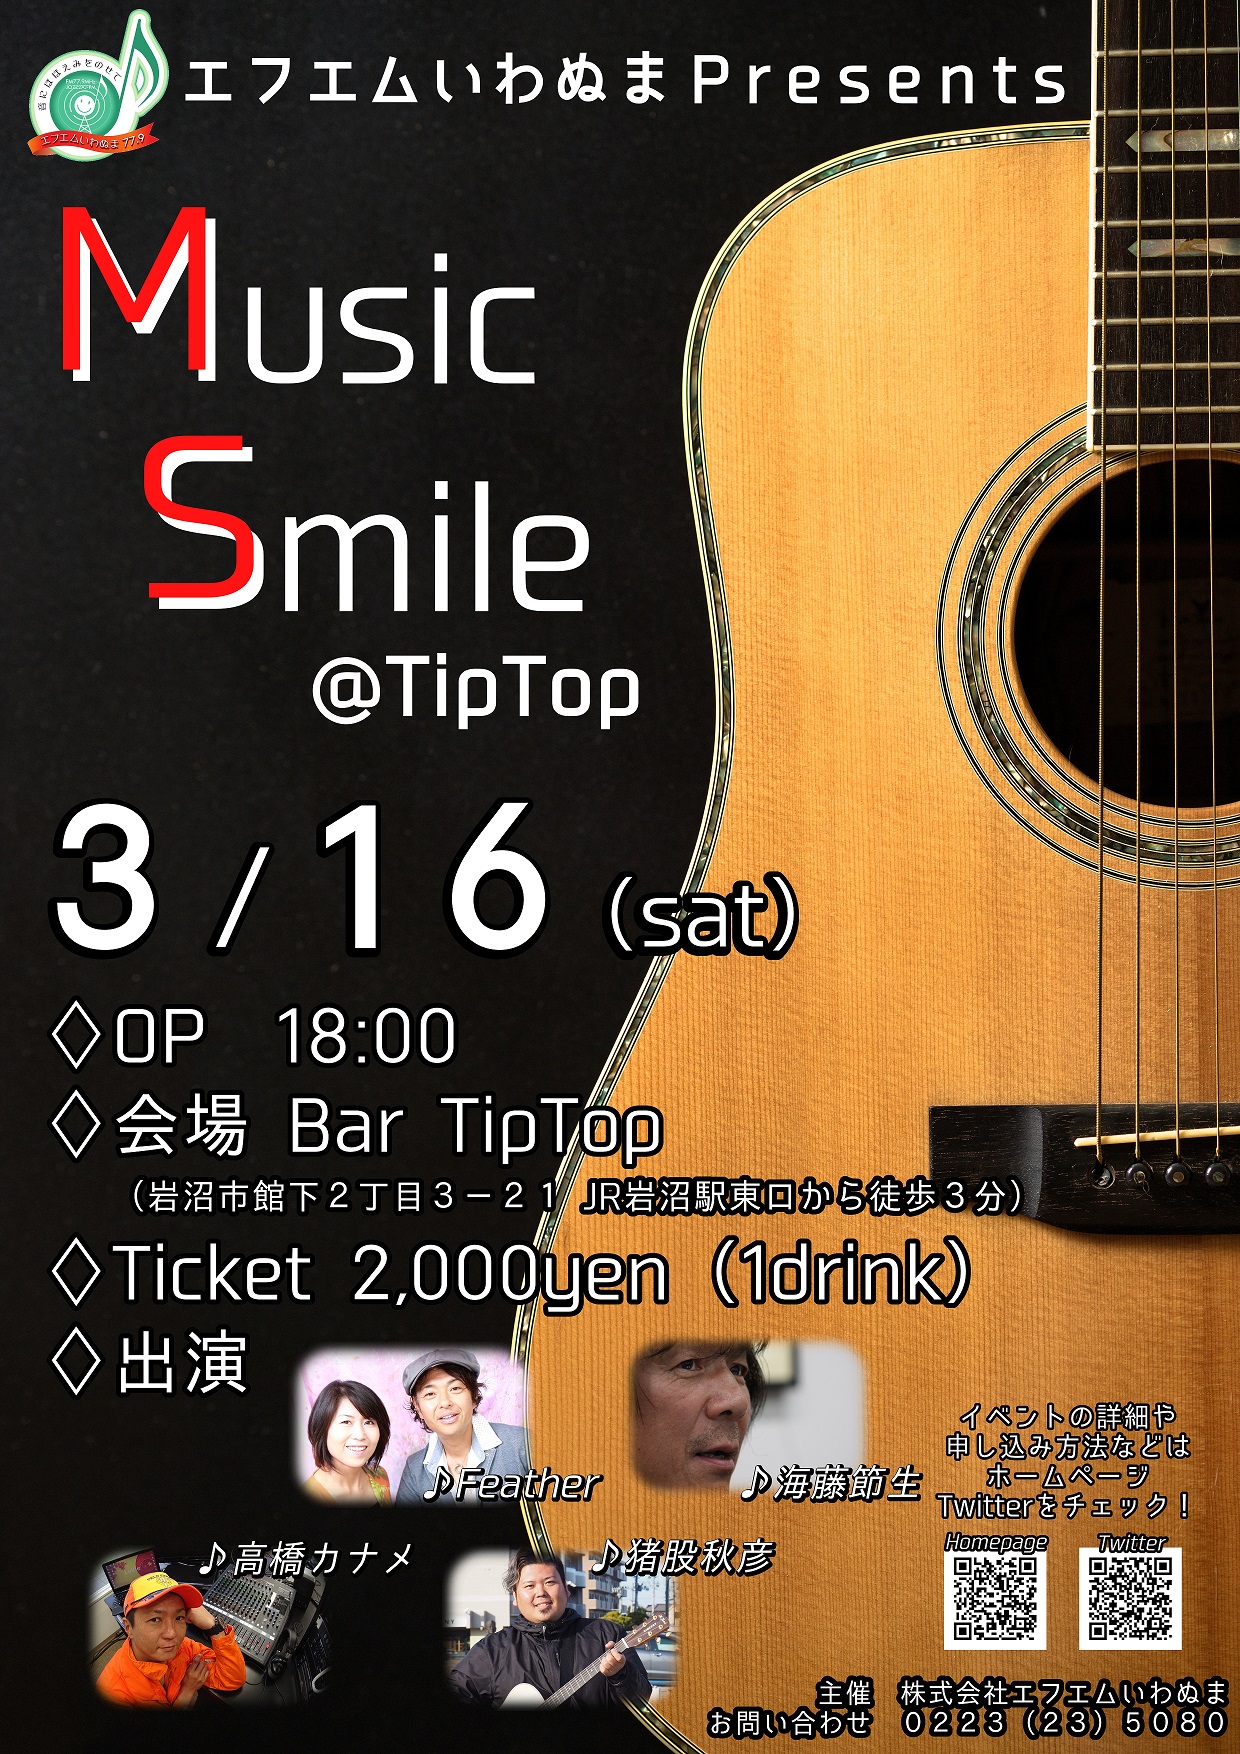 エフエムいわぬま Presents 【Music Smile @ Tip Top】